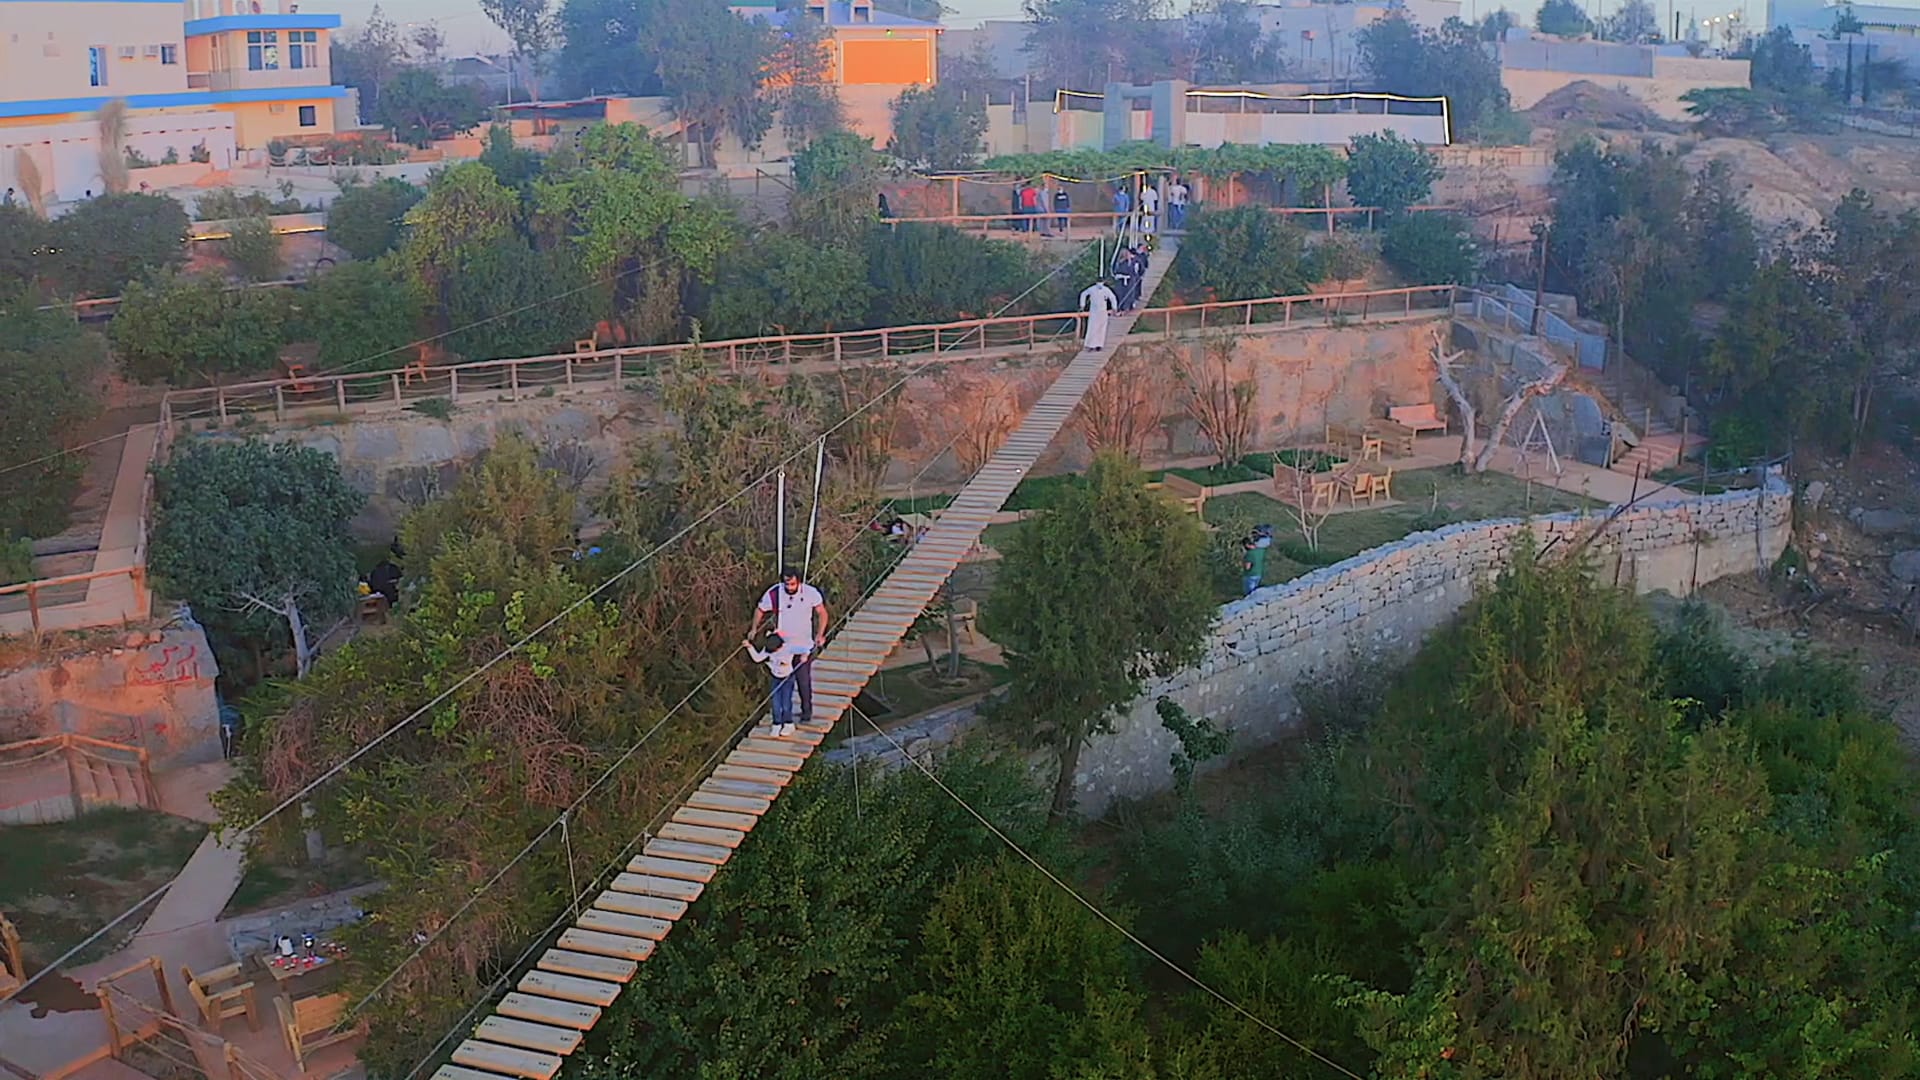 حديقه الجسر النباتيه في بلجرشي